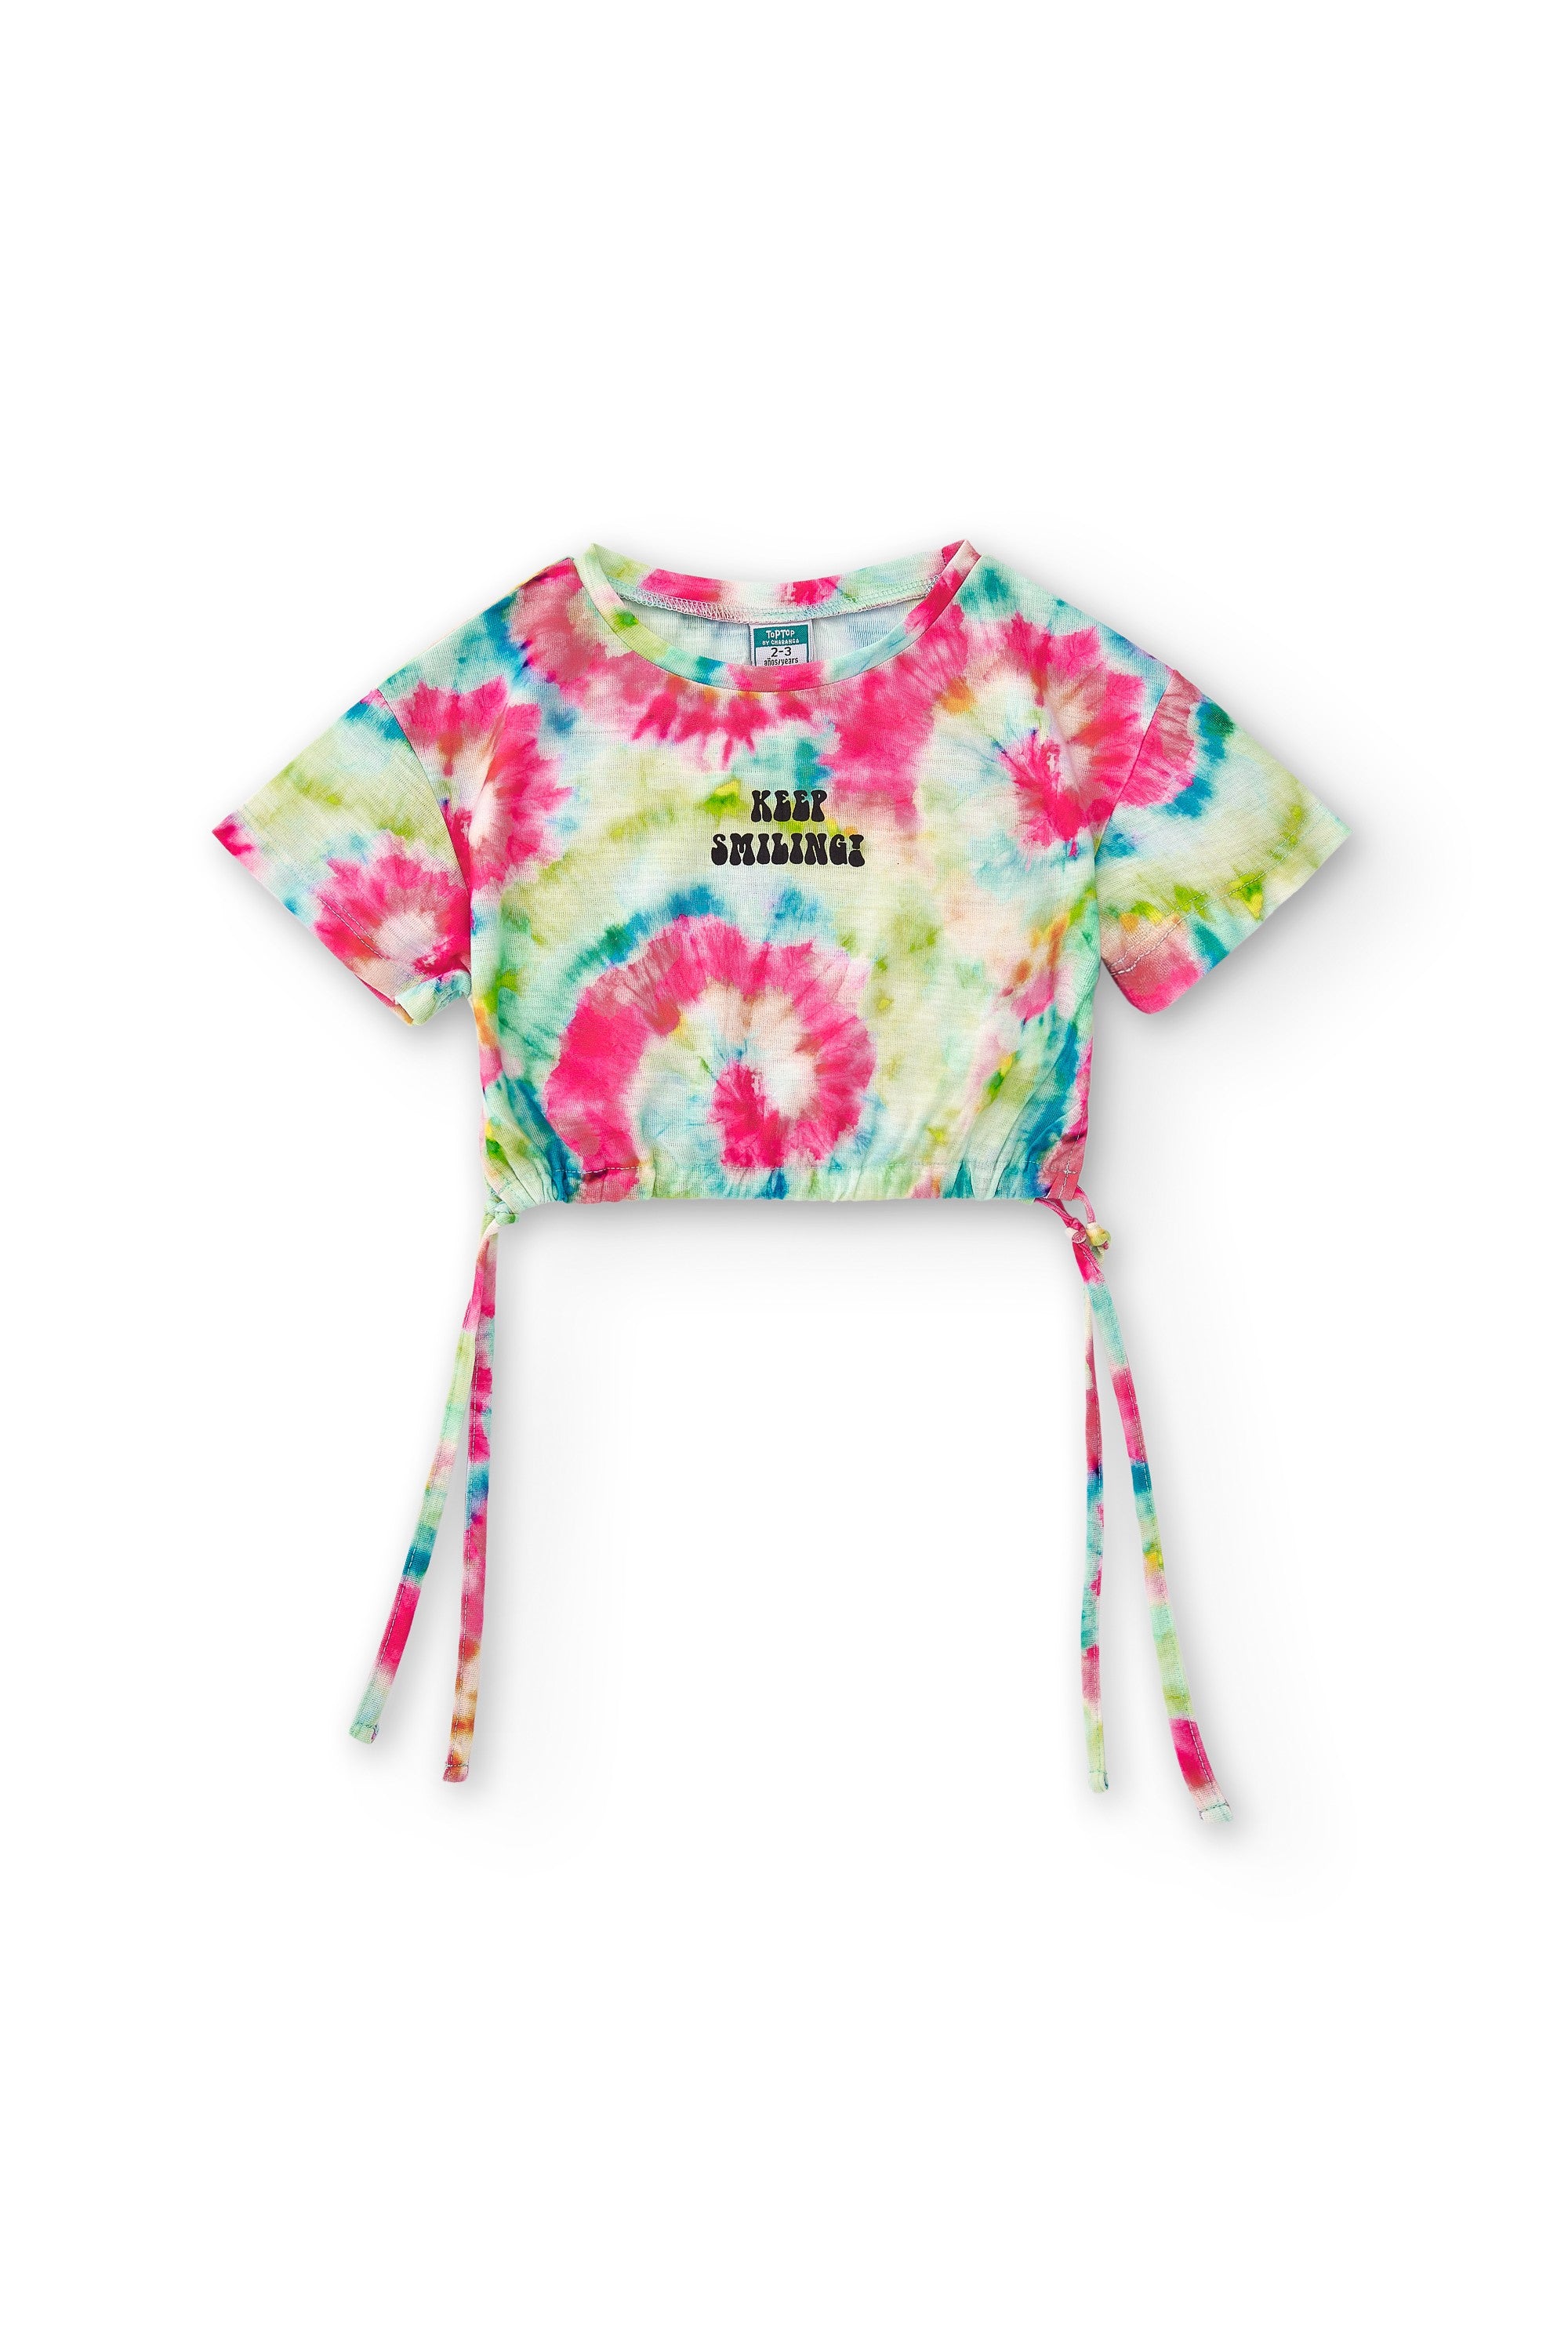 Camiseta de niña multicolor VERANO/Outlet